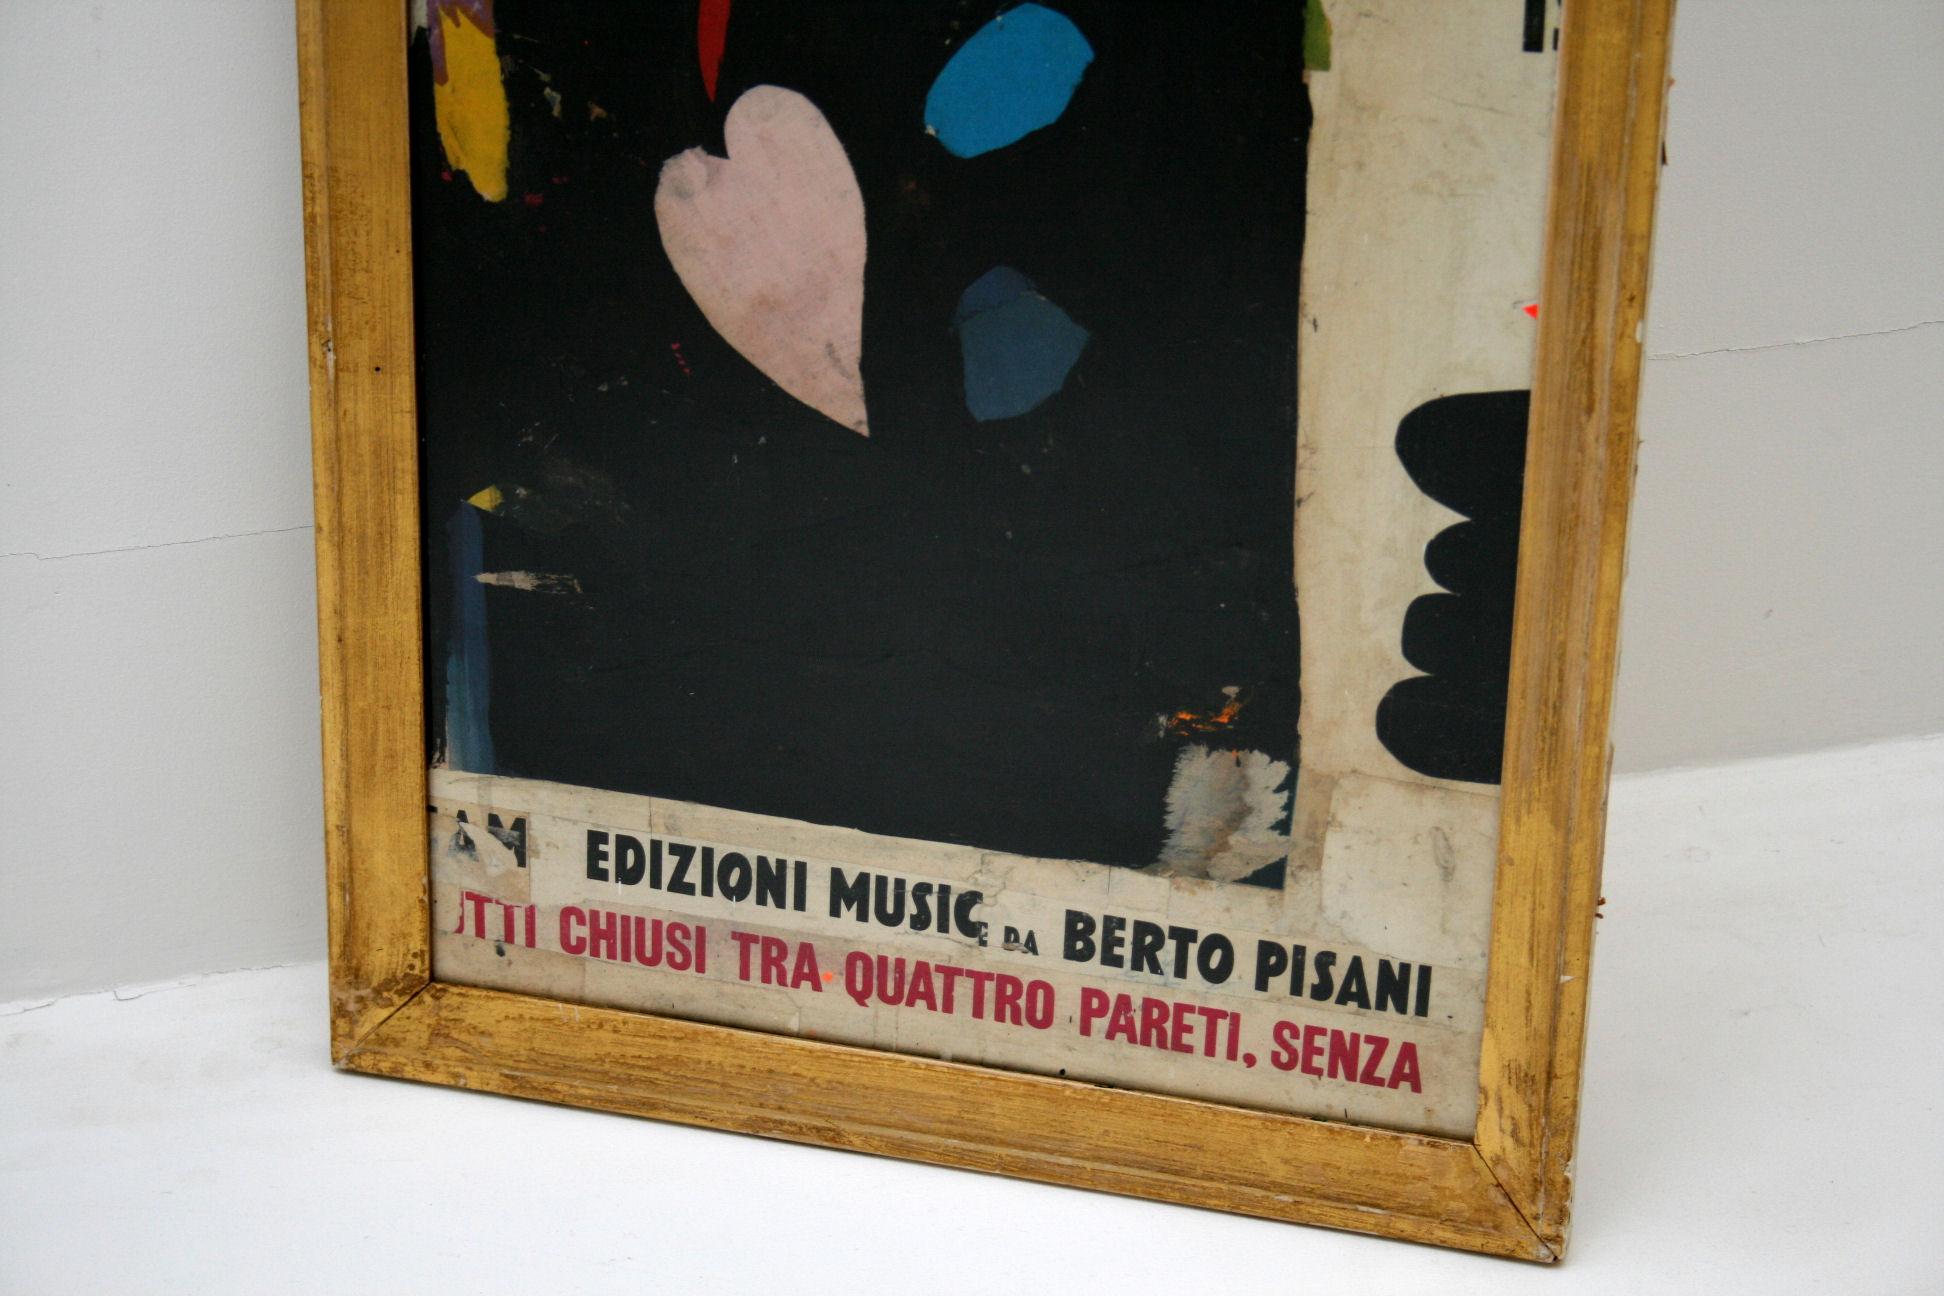 Contemporary Edizioni Music Da Berto Pisani by Huw Griffith